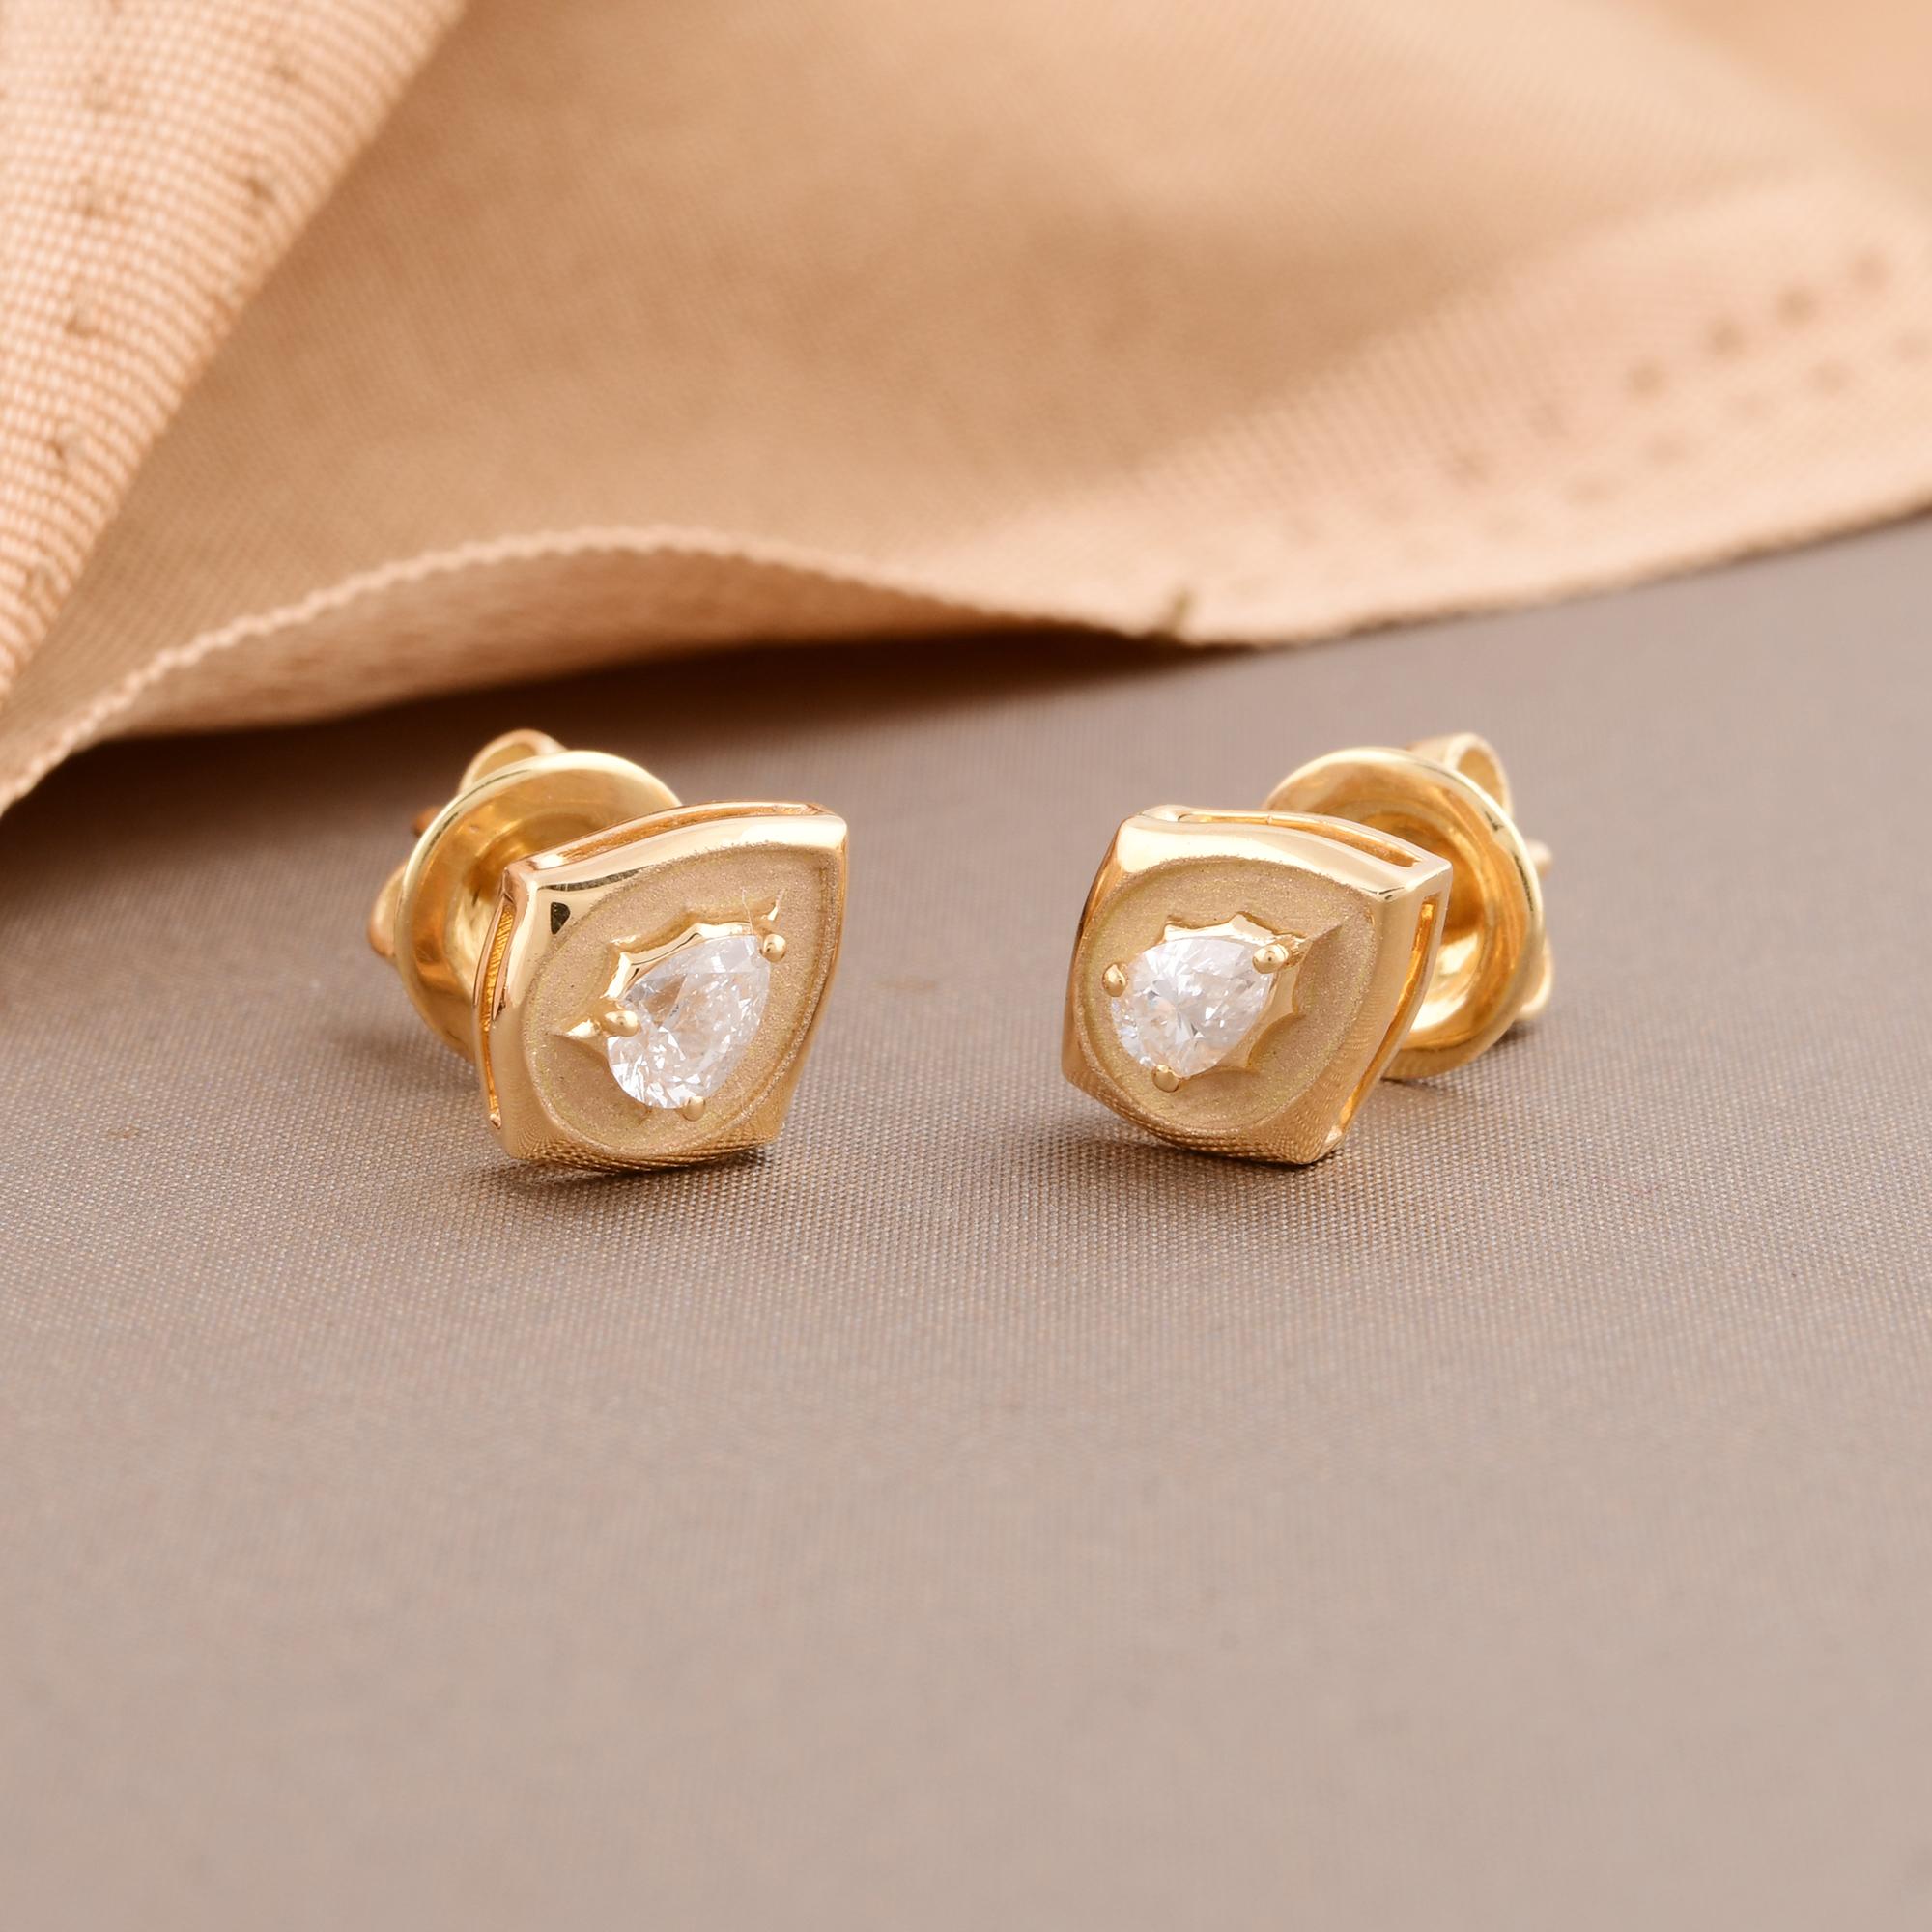 Pear Cut 0.29 Carat Pear Diamond Stud Earrings 14 Karat Yellow Gold Handmade Fine Jewelry For Sale